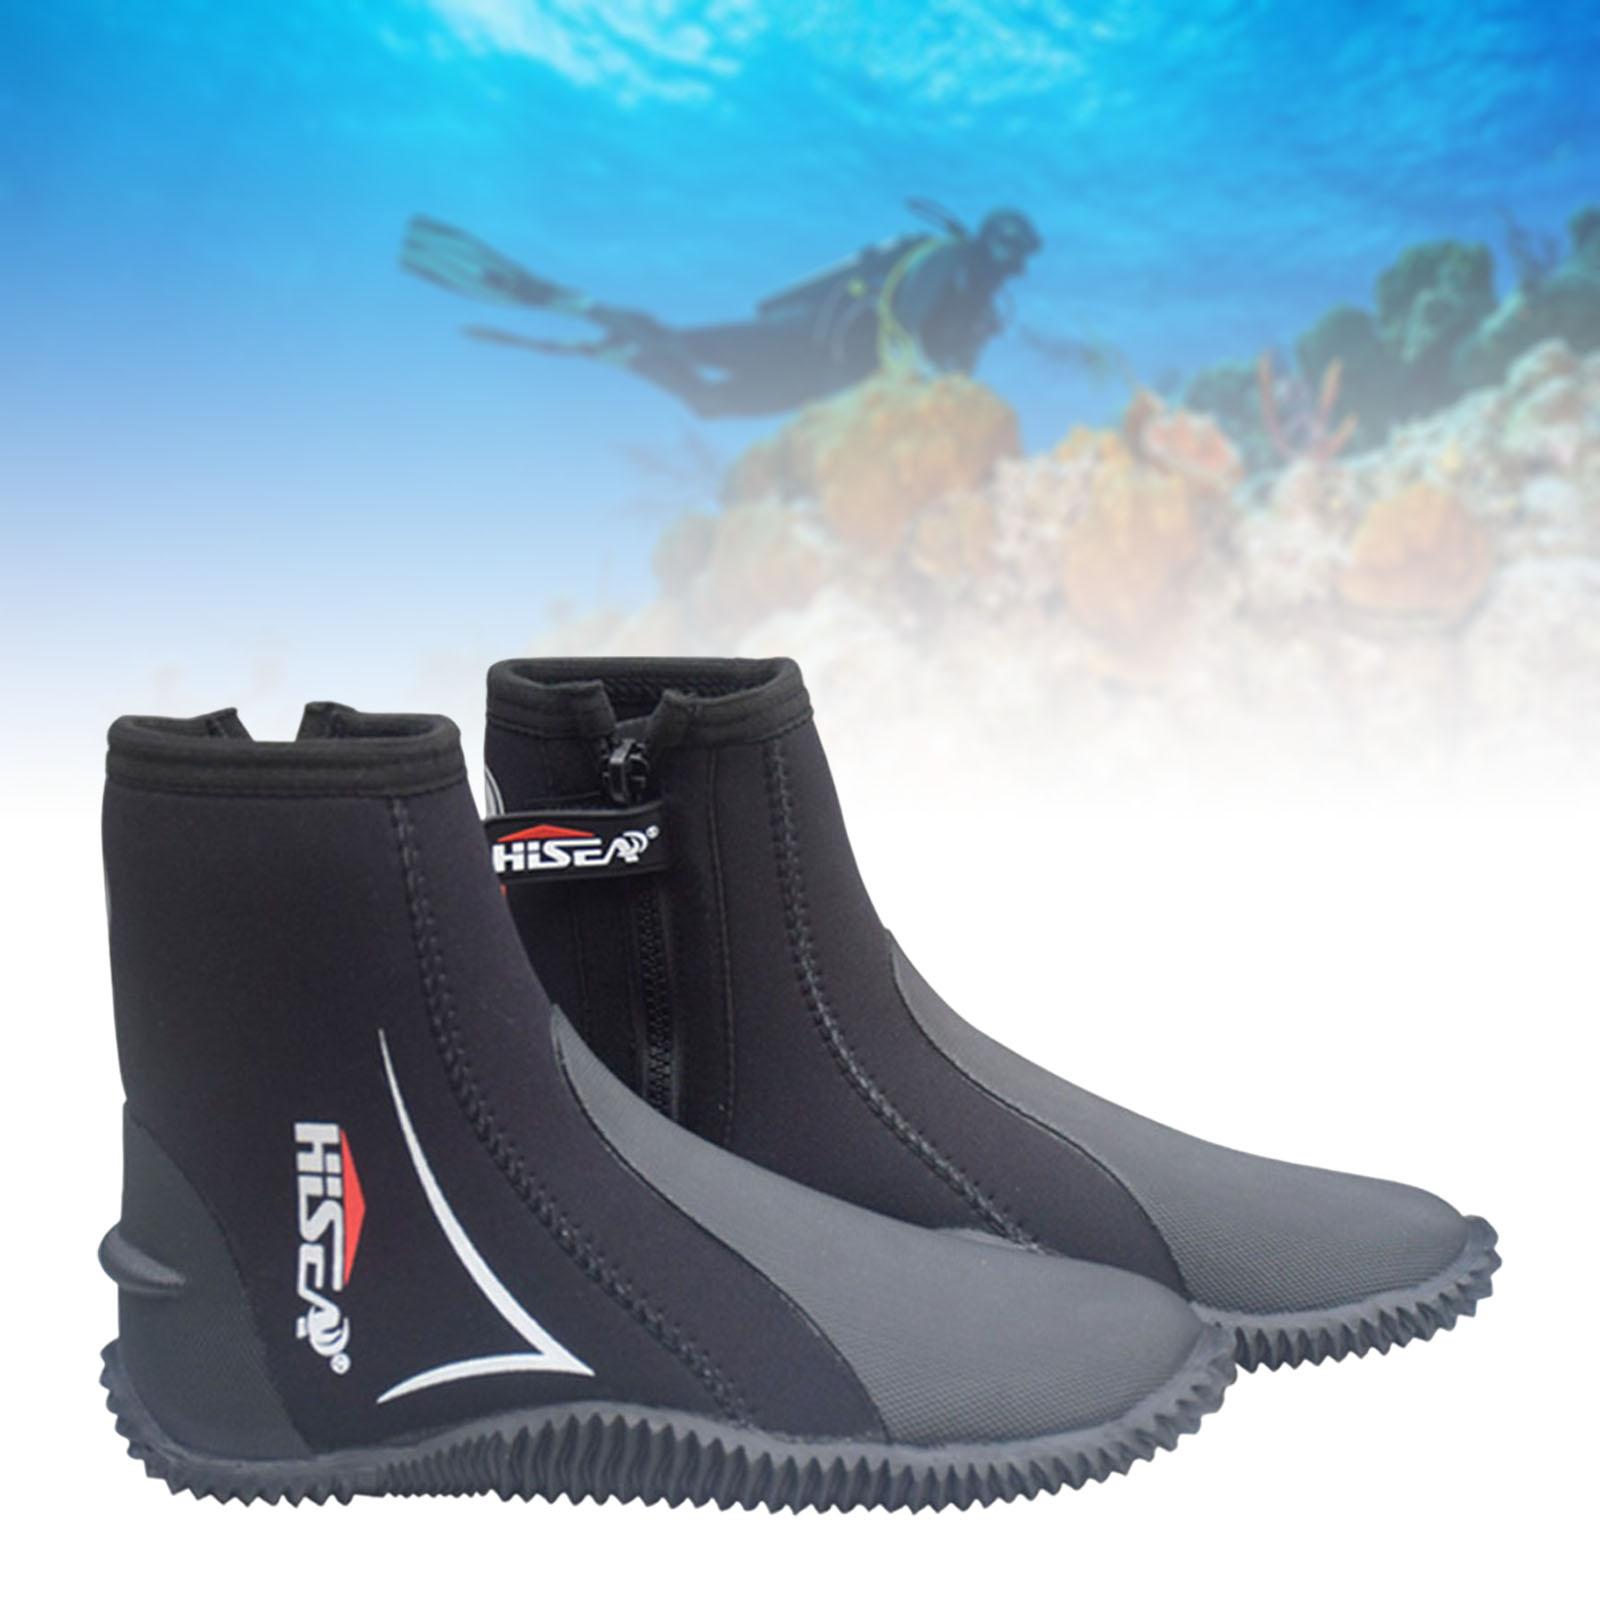 Scuba Diving Booties Neoprene Water Sports Wetsuit Boots Black 40 24.5-25